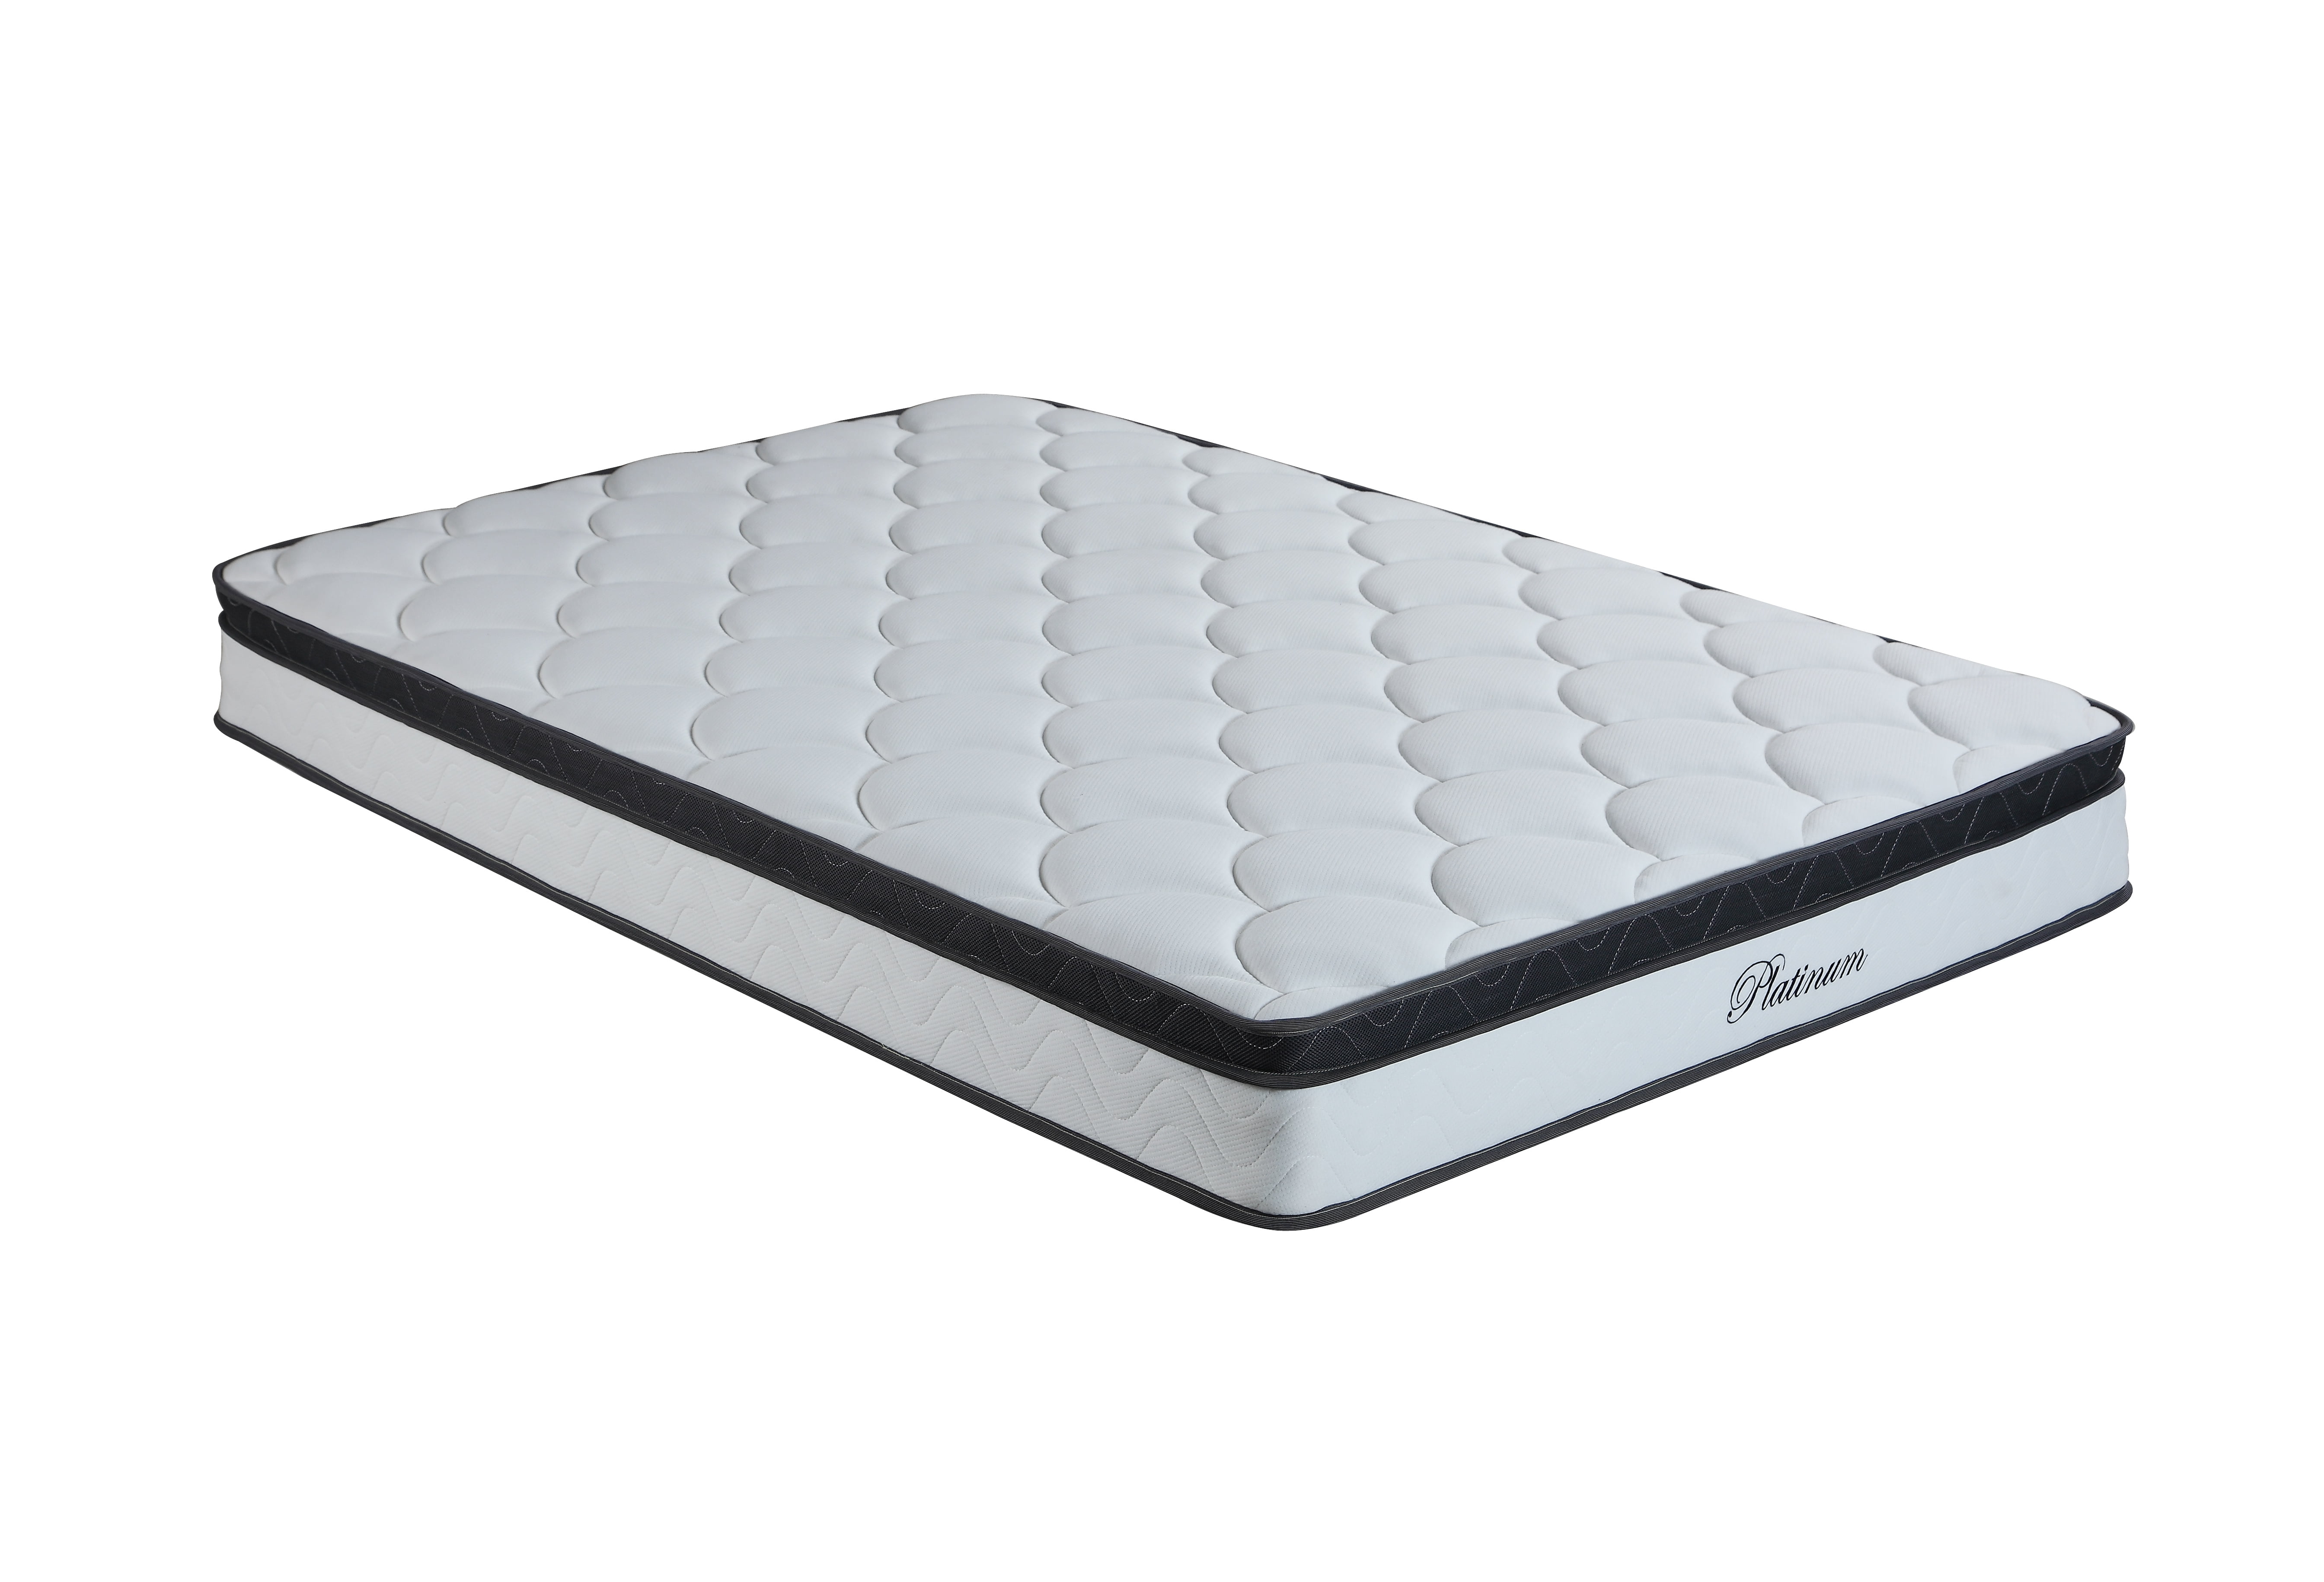 hybrid mattress for bunkbed